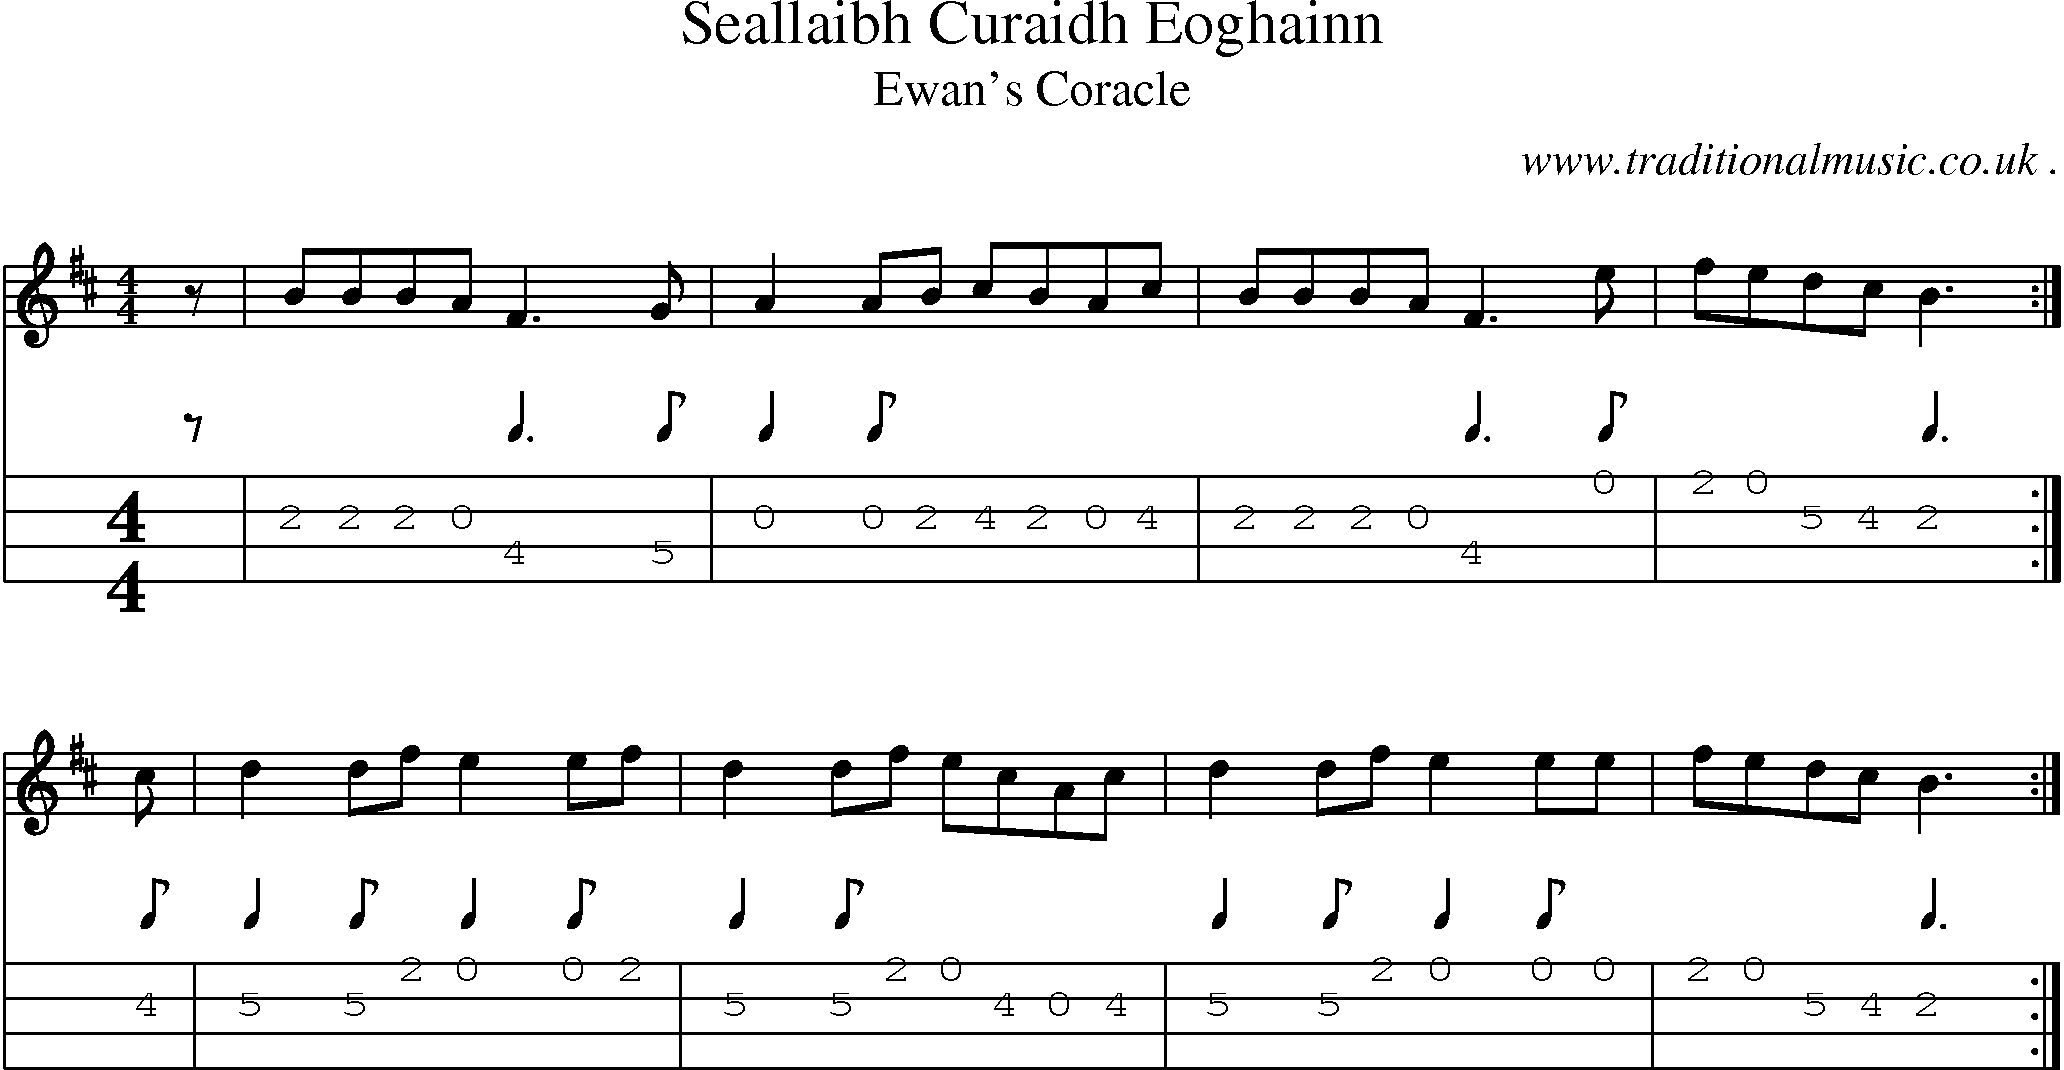 Sheet-music  score, Chords and Mandolin Tabs for Seallaibh Curaidh Eoghainn